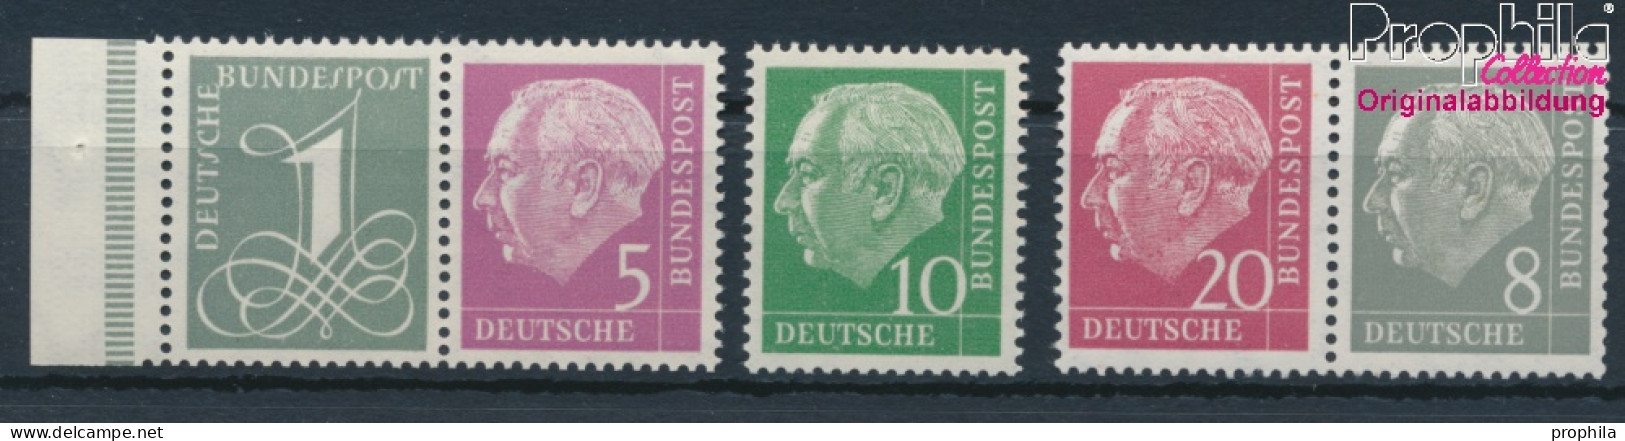 BRD 179Y,182Y,183Y,185Y,285Y (kompl.Ausg.) Liegendes Wasserzeichen Postfrisch 1960 Heuss I (10347826 - Ungebraucht